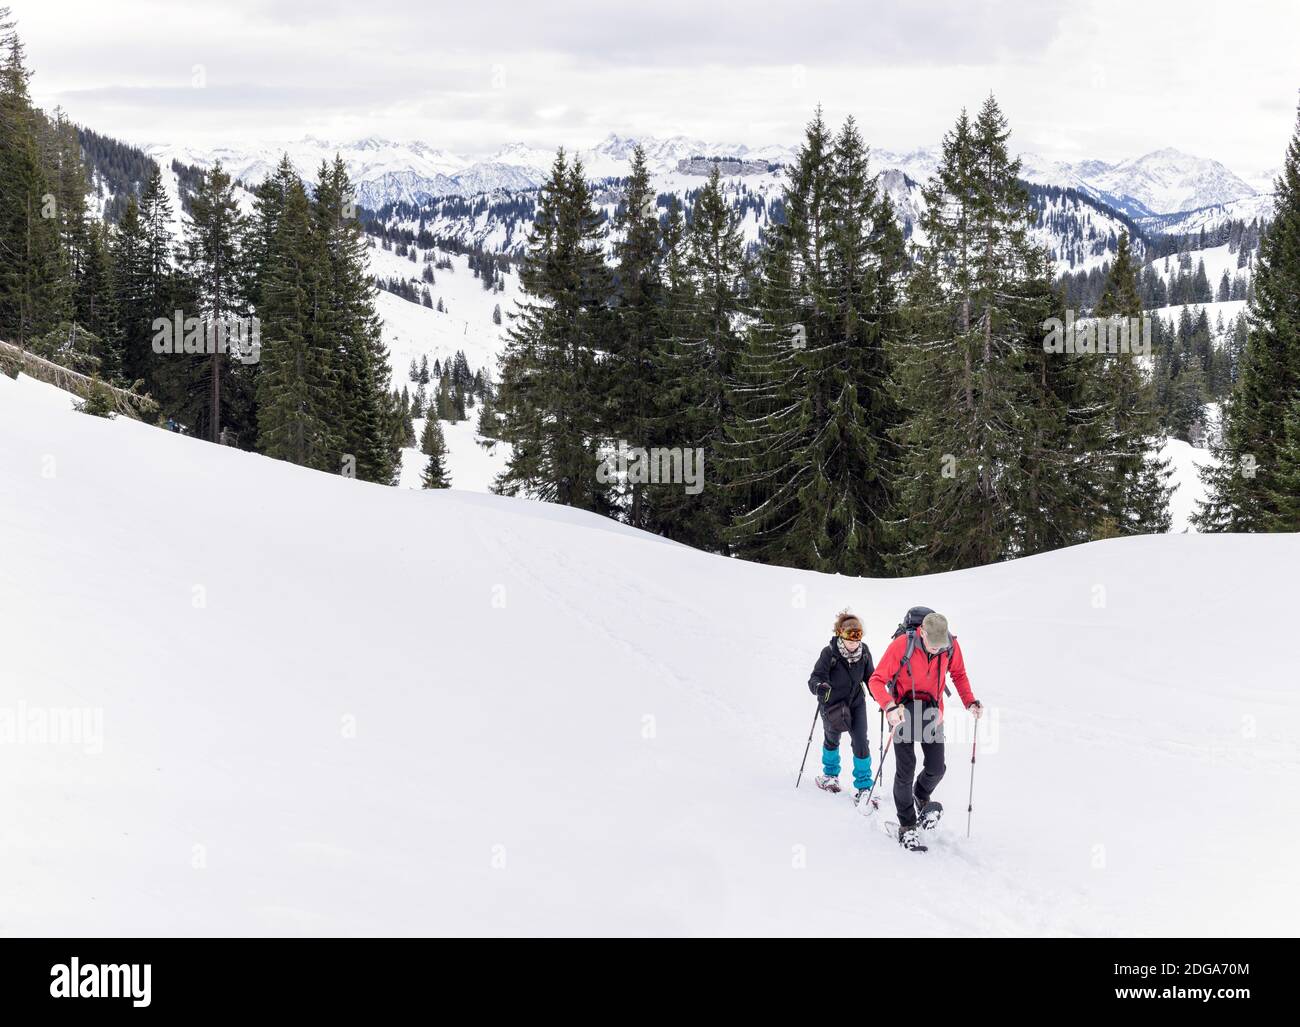 Seniorenpaar ist Schneeschuhwandern in alpinen Schnee Winter Berge. Allgau, Bayern, Deutschland. Stockfoto